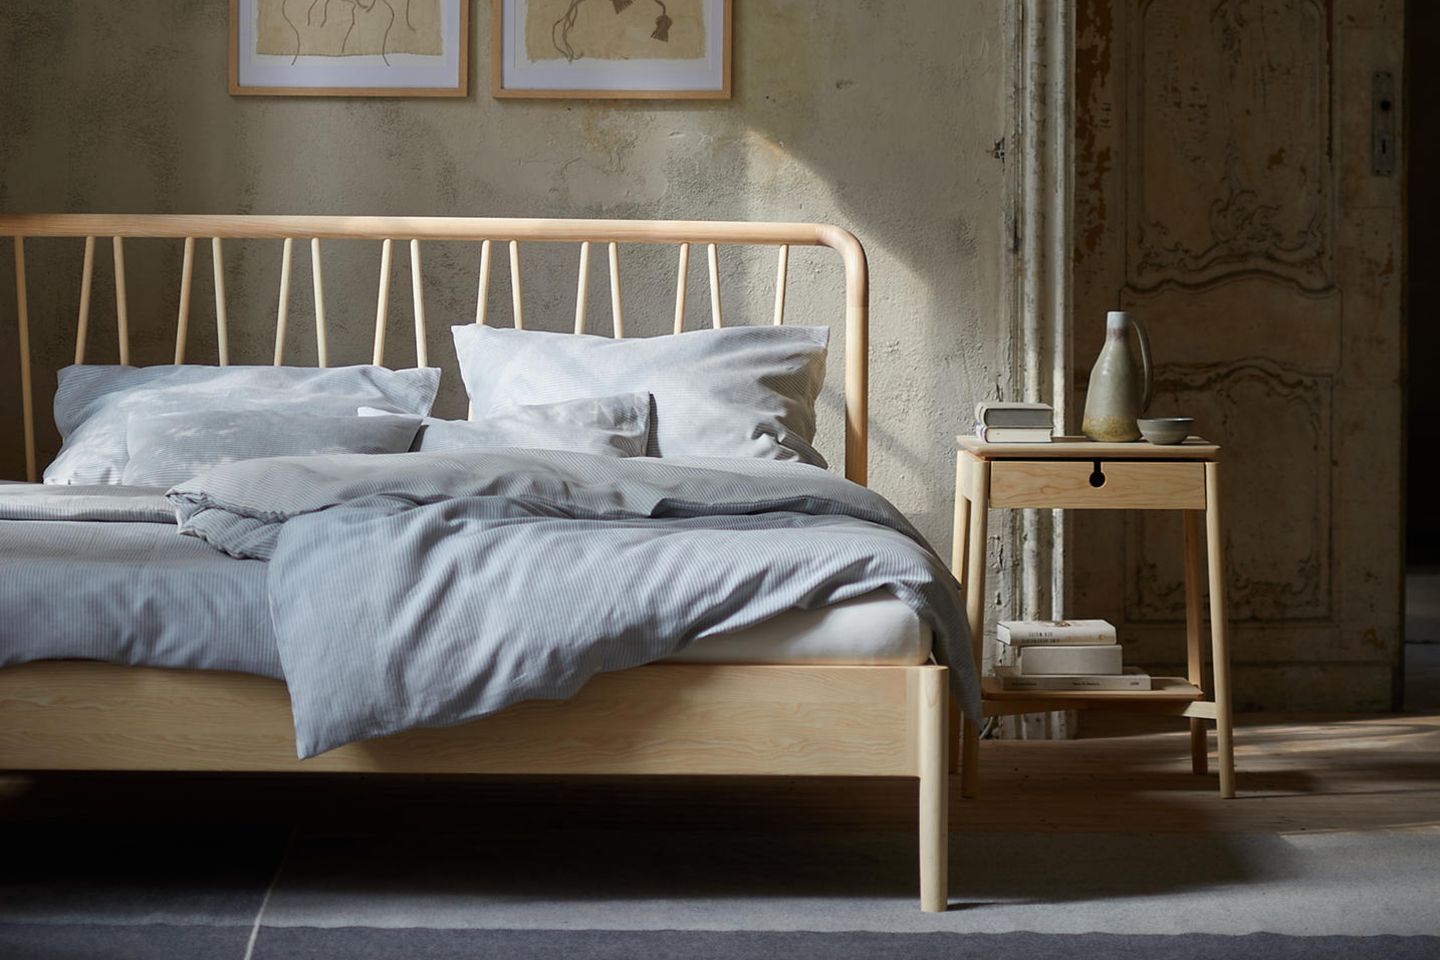 Bett mit dekorativem Holzheadboard steht vor einer Betonwand